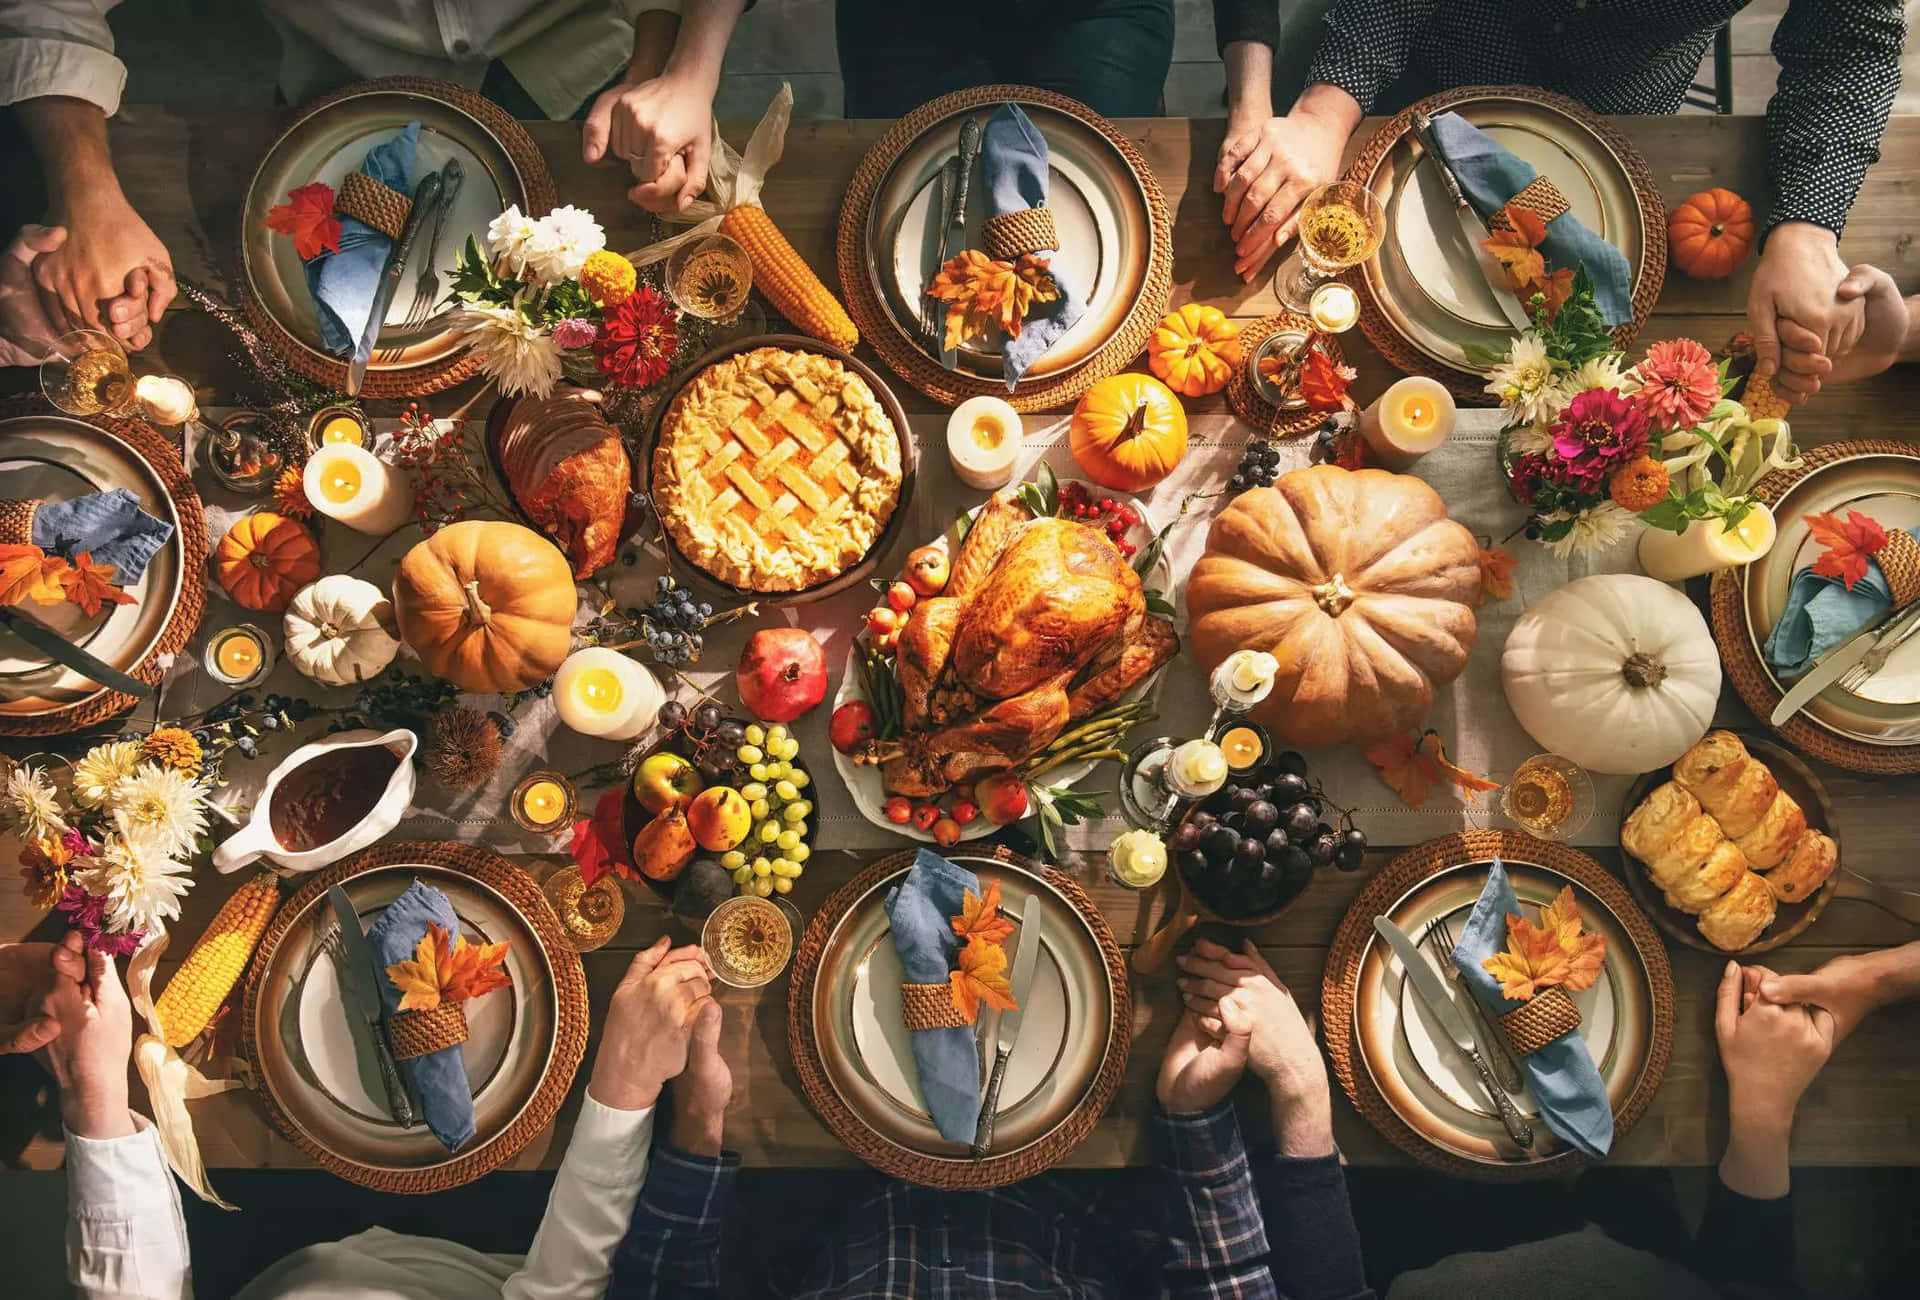 Billeder af Thanksgiving af kalkuner, græskar, kornucopier og meget mere pryder denne tapet.